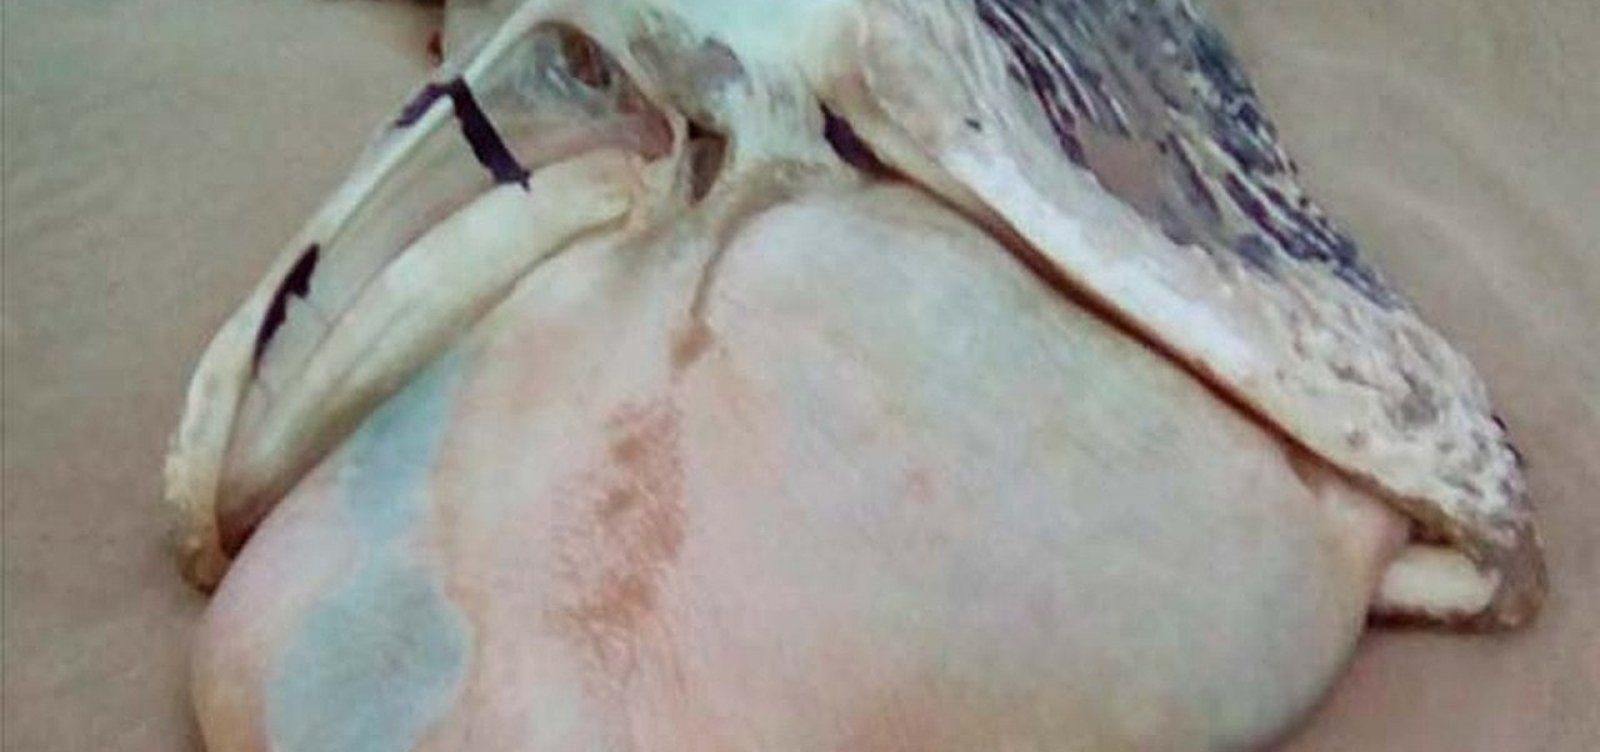 Filhote de baleia jubarte é achado morto em praia de Itacaré